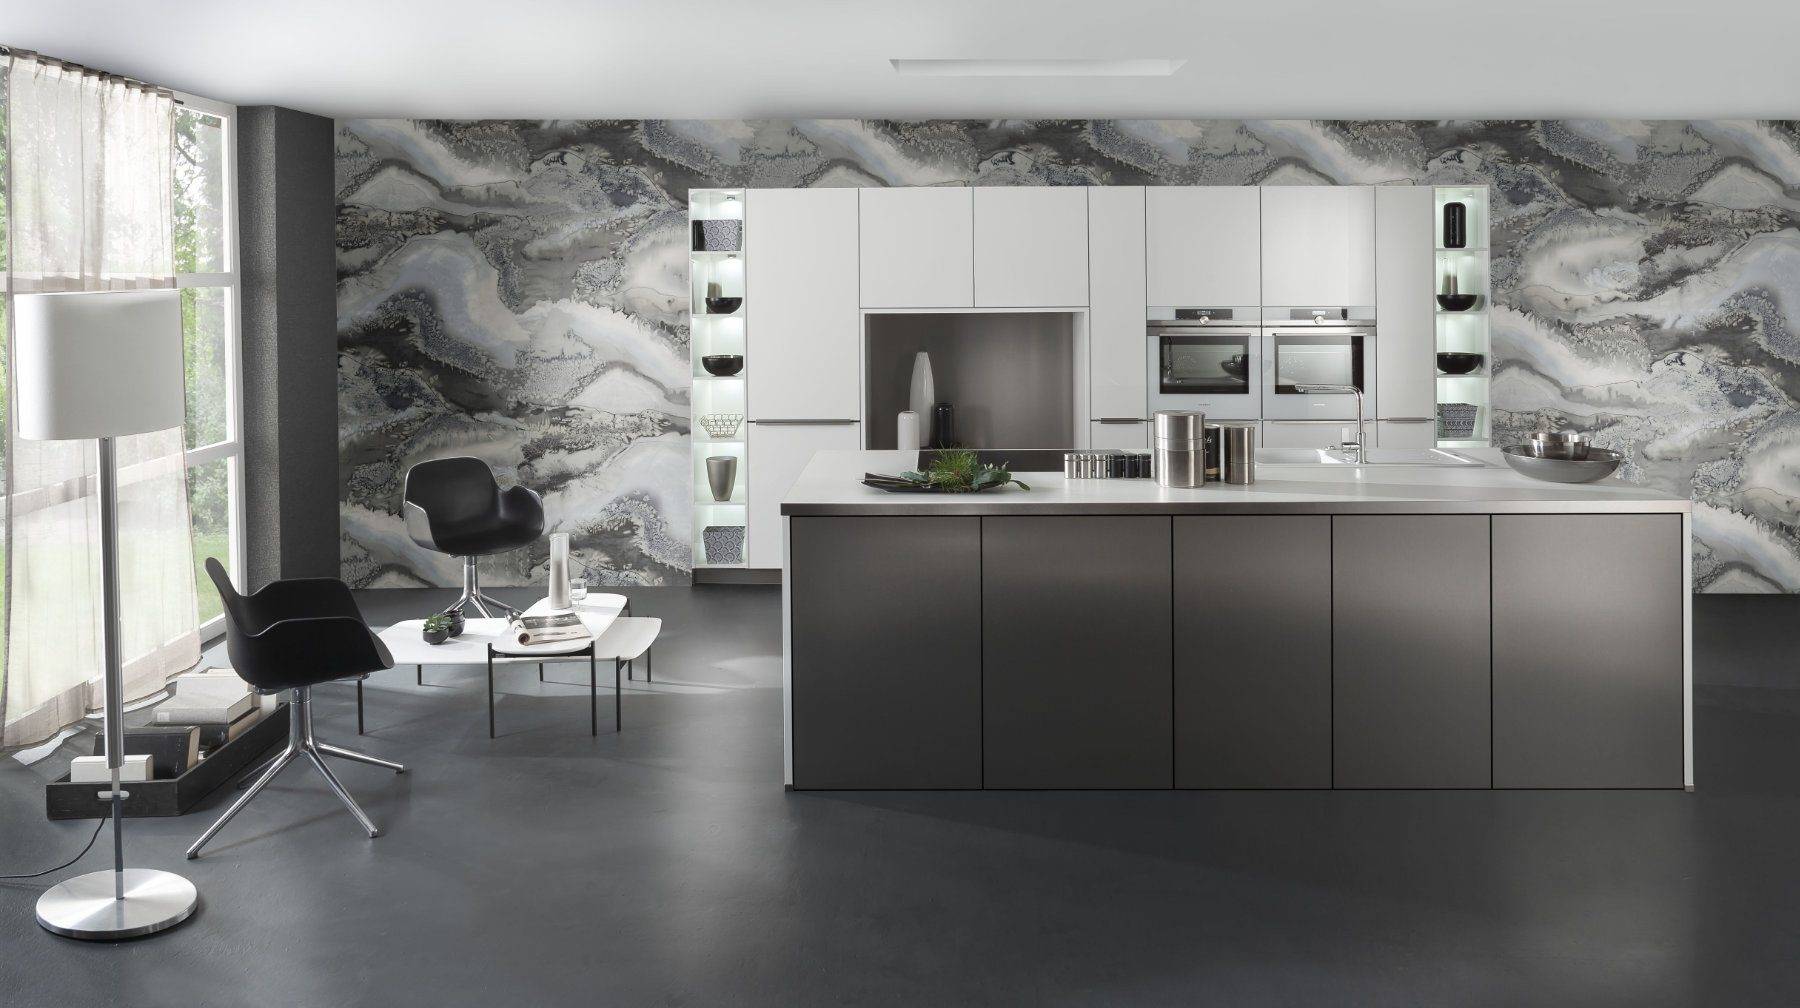 Bauformat Matt White Metallic Effect Kitchen With Island | Torben Schmid Kitchens, Truro